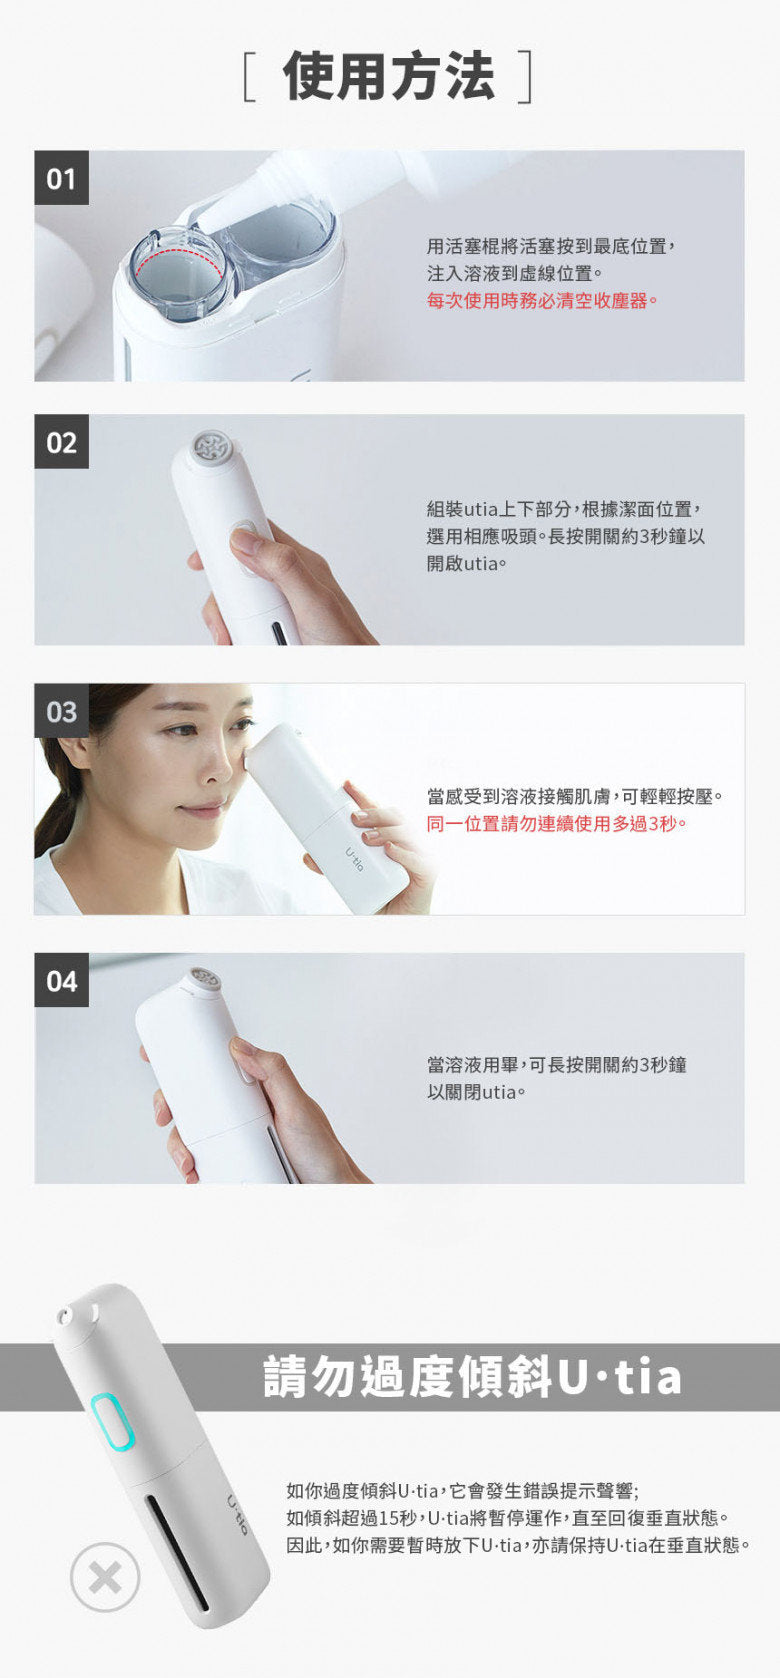 Utia - South Korea U.tia Aqua Peeling Deep Pore Cleansing Machine LQP-100 [Licensed in Hong Kong]